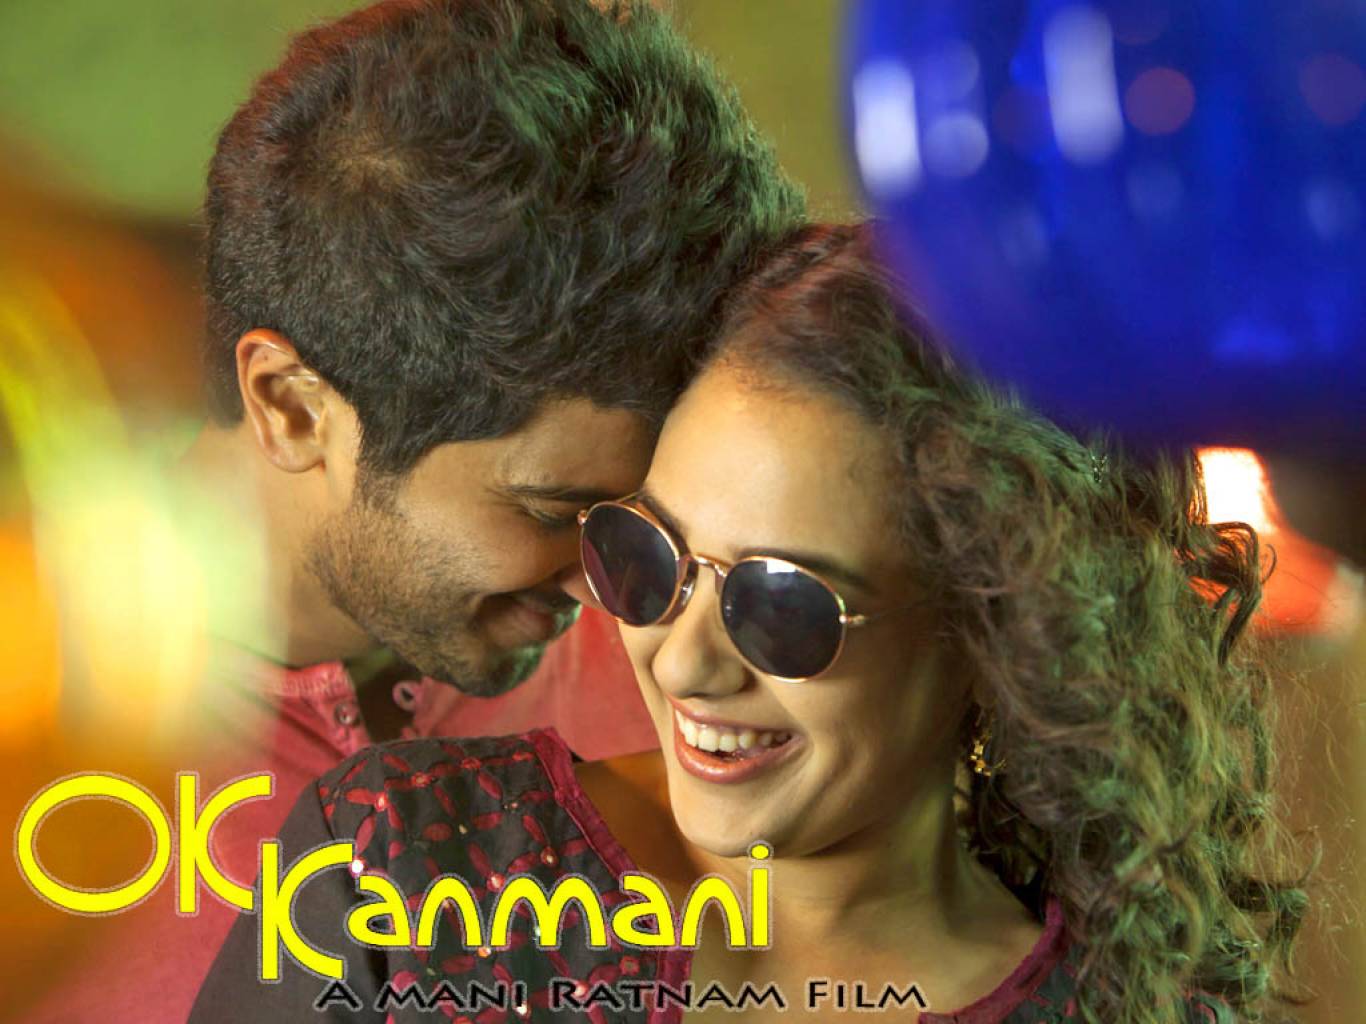 film tamil sfondi hd 1080p,occhiali,occhiali da sole,canzone,freddo,romanza